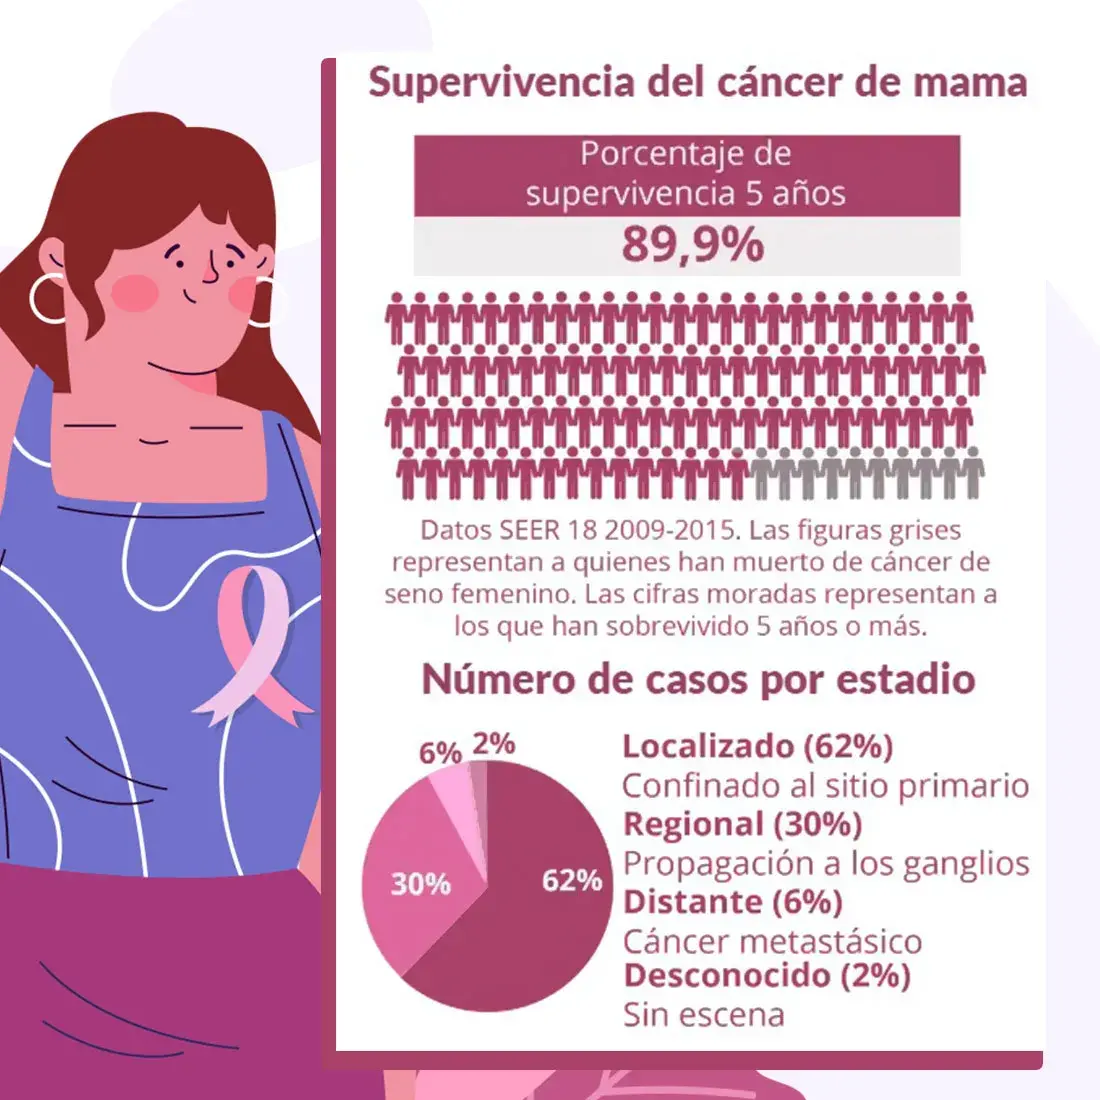 El porcentaje de supervivencia de las mujeres que padecen cáncer de mama es de 5 año o más.